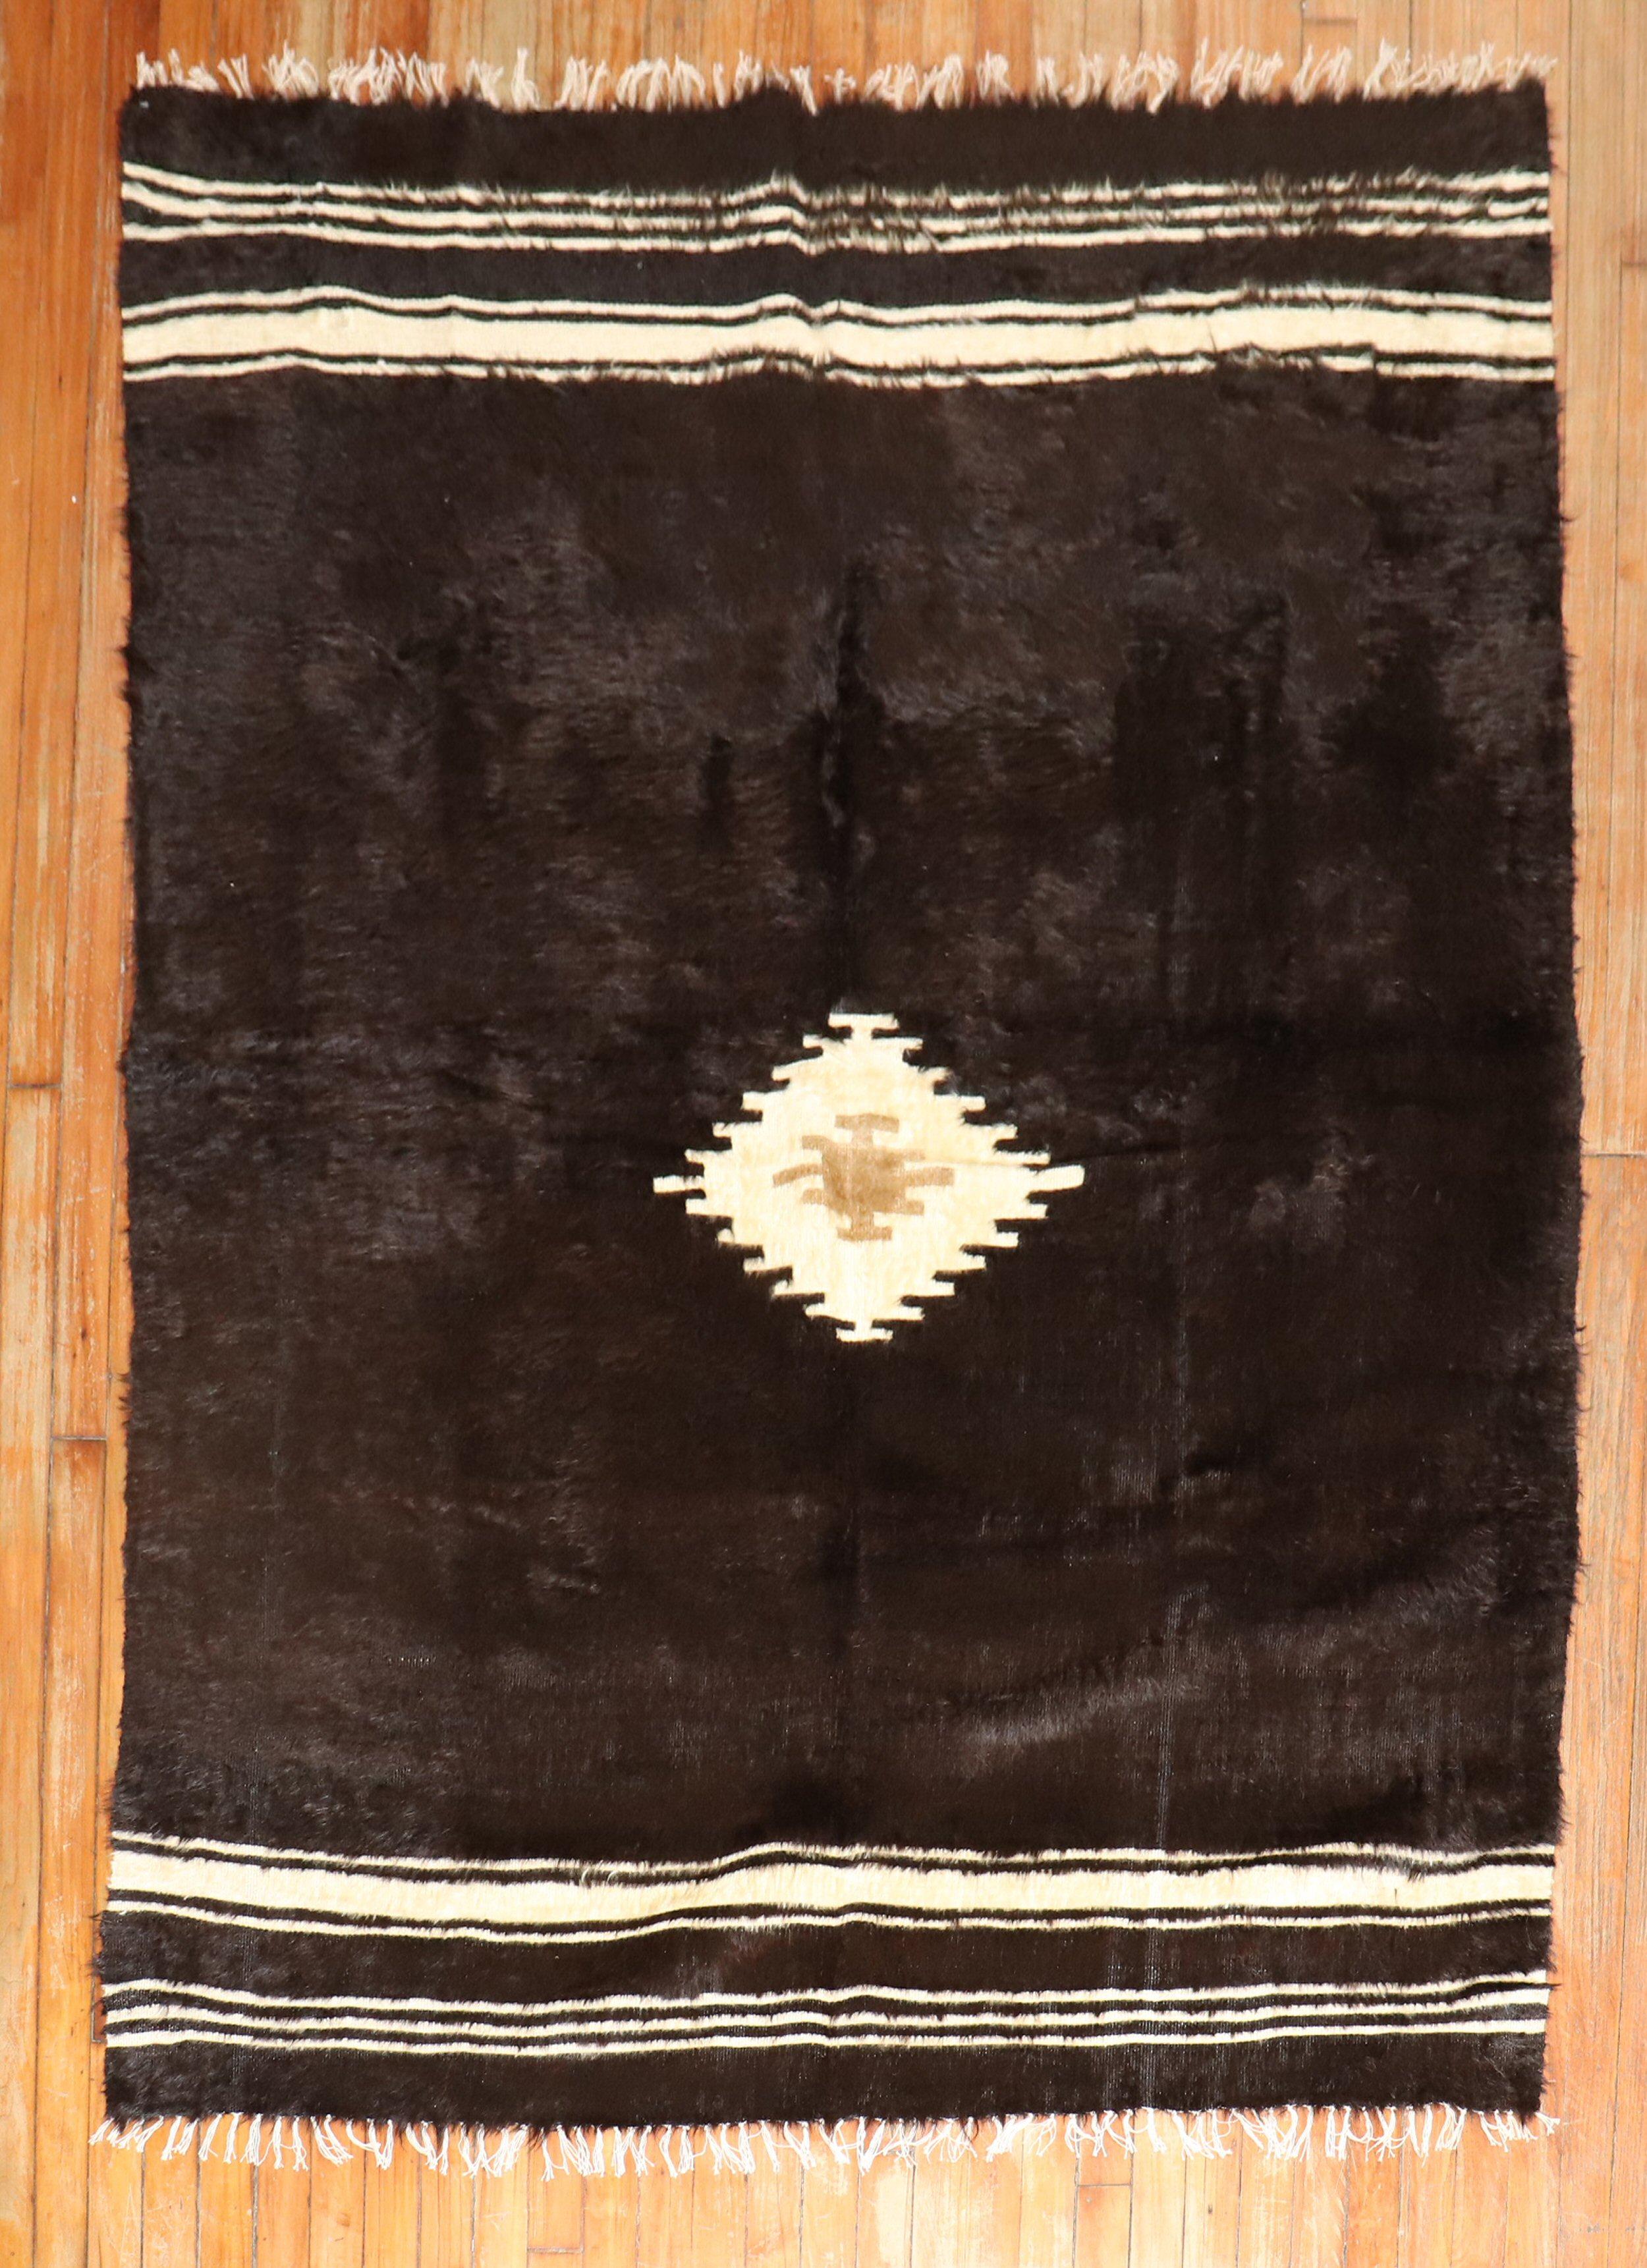 Tapis vintage en laine mohair angora en noir et ivoire.

Mesures : 5' x 6'7''.